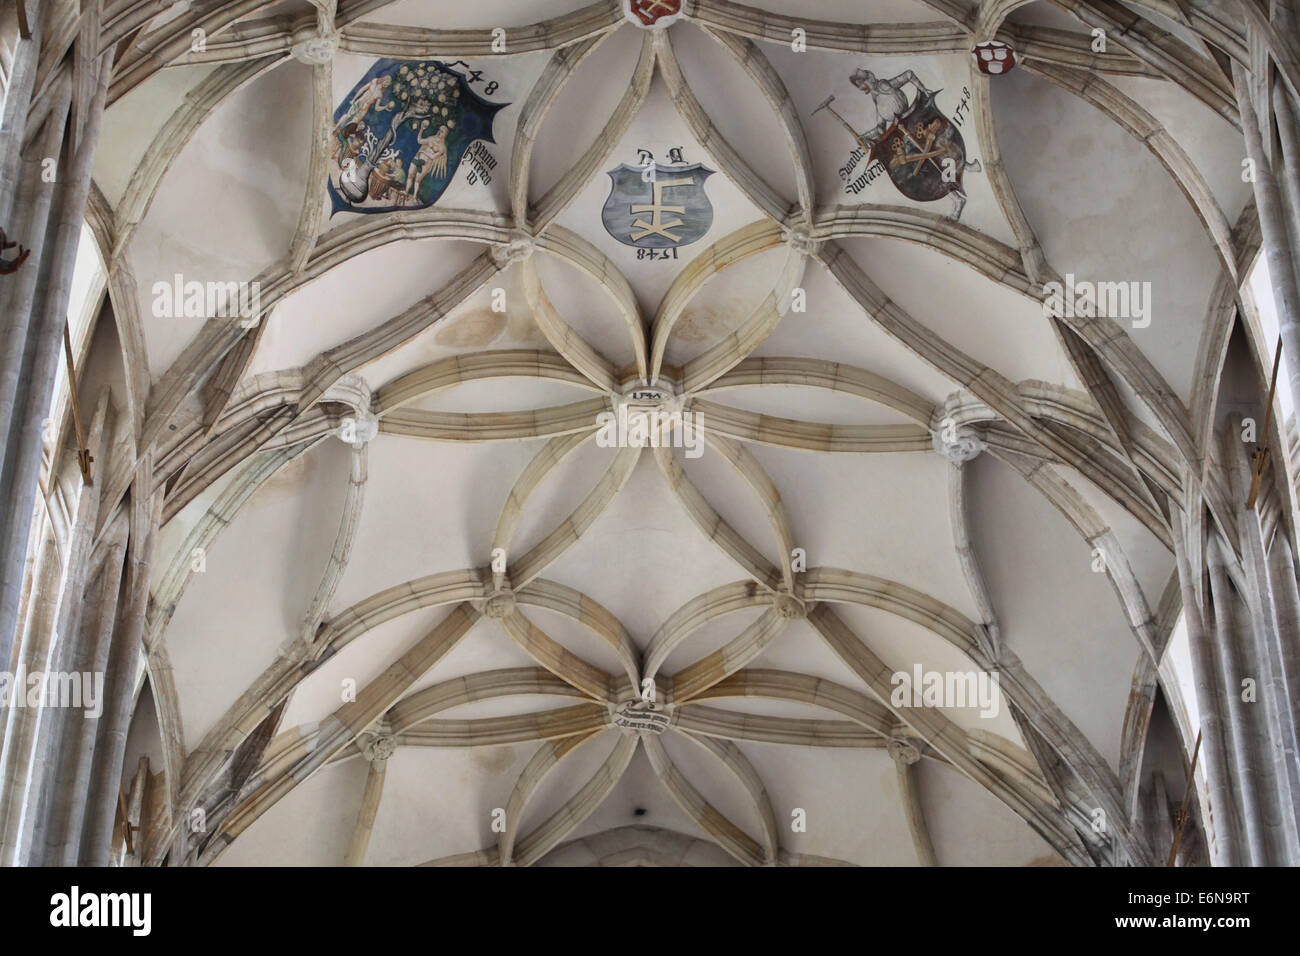 Voûte nervurée gothique décoré d'armoiries dans l'église Sainte Barbara à Kutná Hora, République tchèque. Banque D'Images